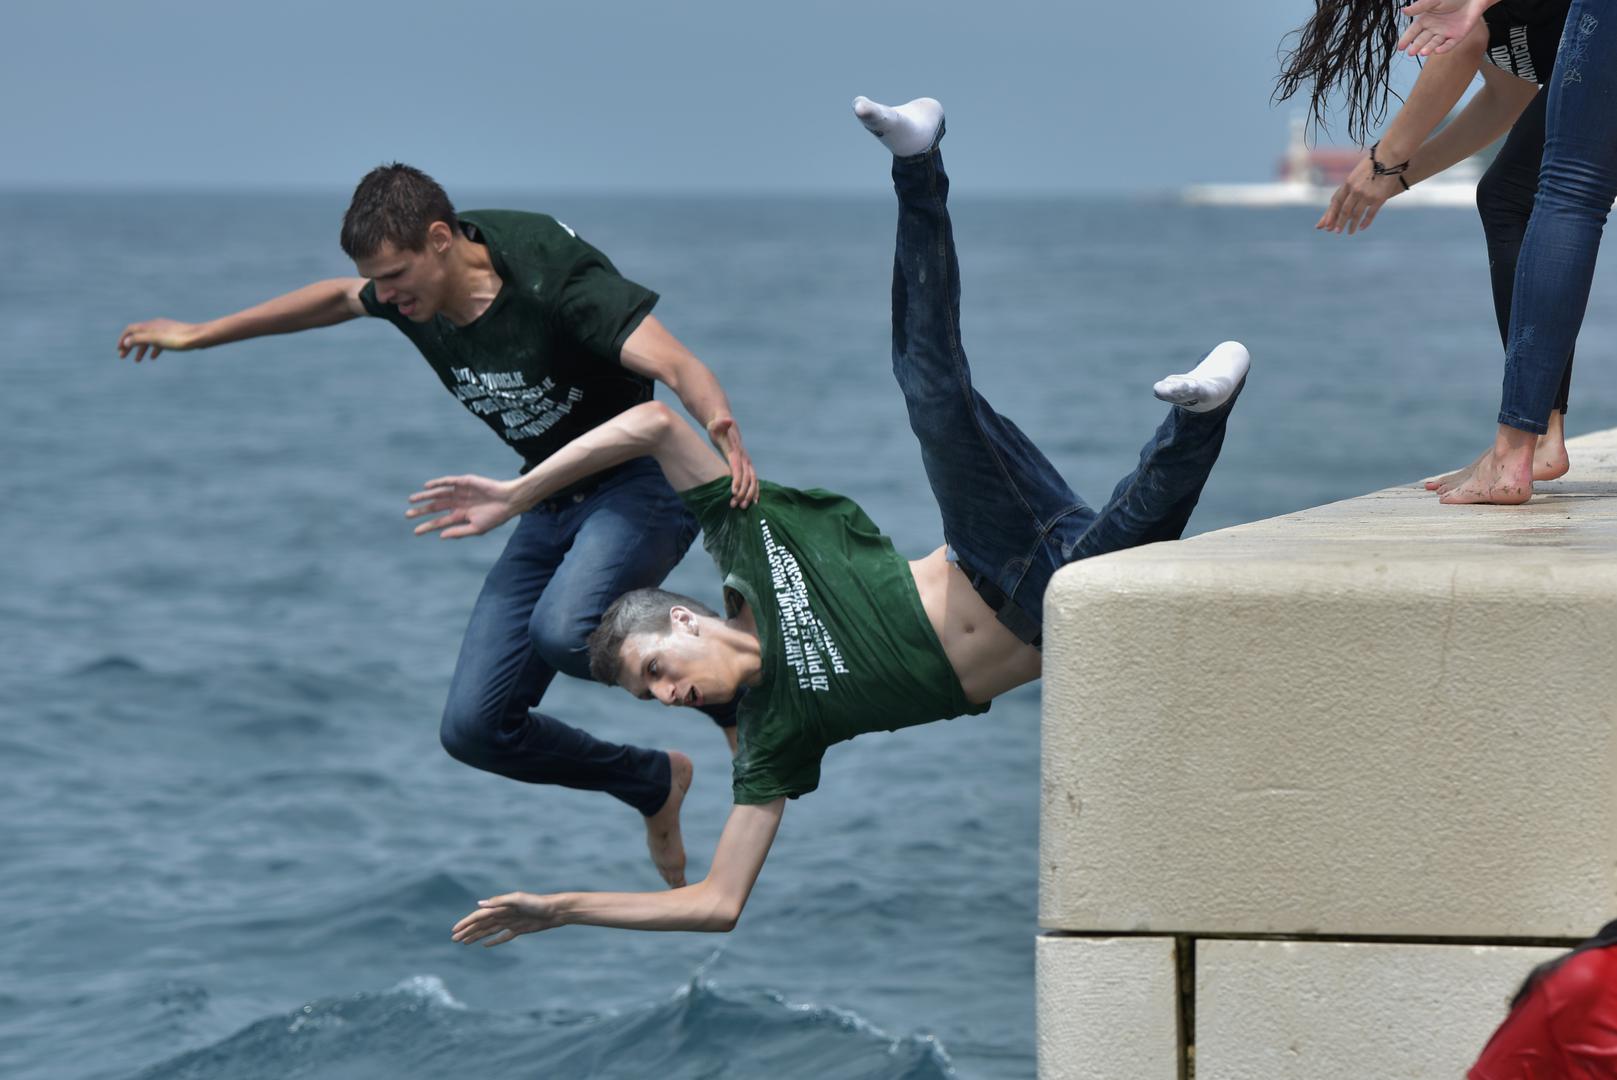 Završetak srednjoškolskog obrazovanja zadarski maturanti tradicionalno su proslavili skakanjem u more s rive.